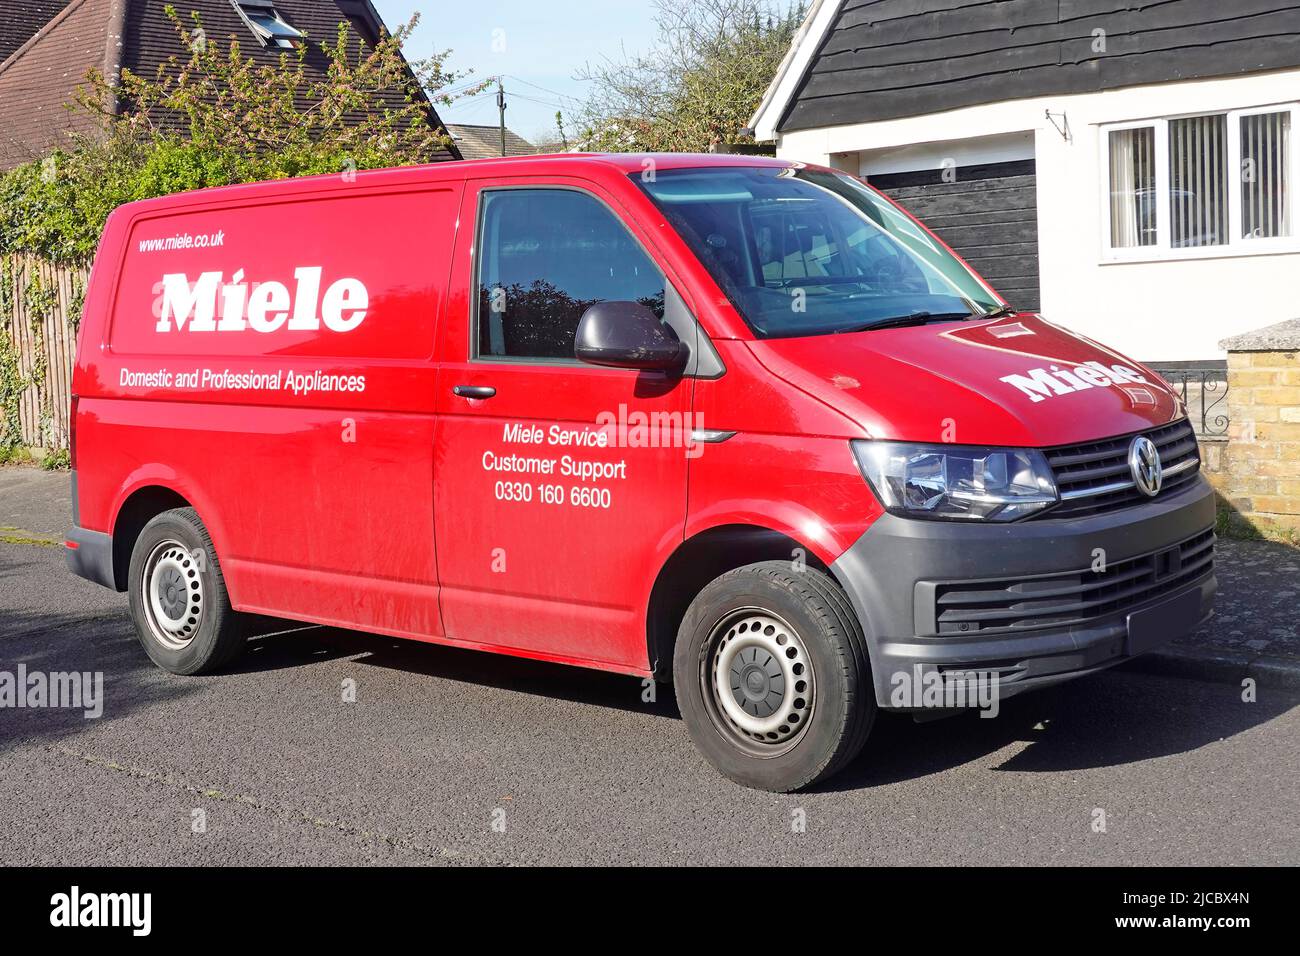 Les ingénieurs ont Red Volkswagen VW Miele van pour les appareils domestiques et professionnels en mettant le service clientèle en stationnement sur la route résidentielle Essex Angleterre Royaume-Uni Banque D'Images